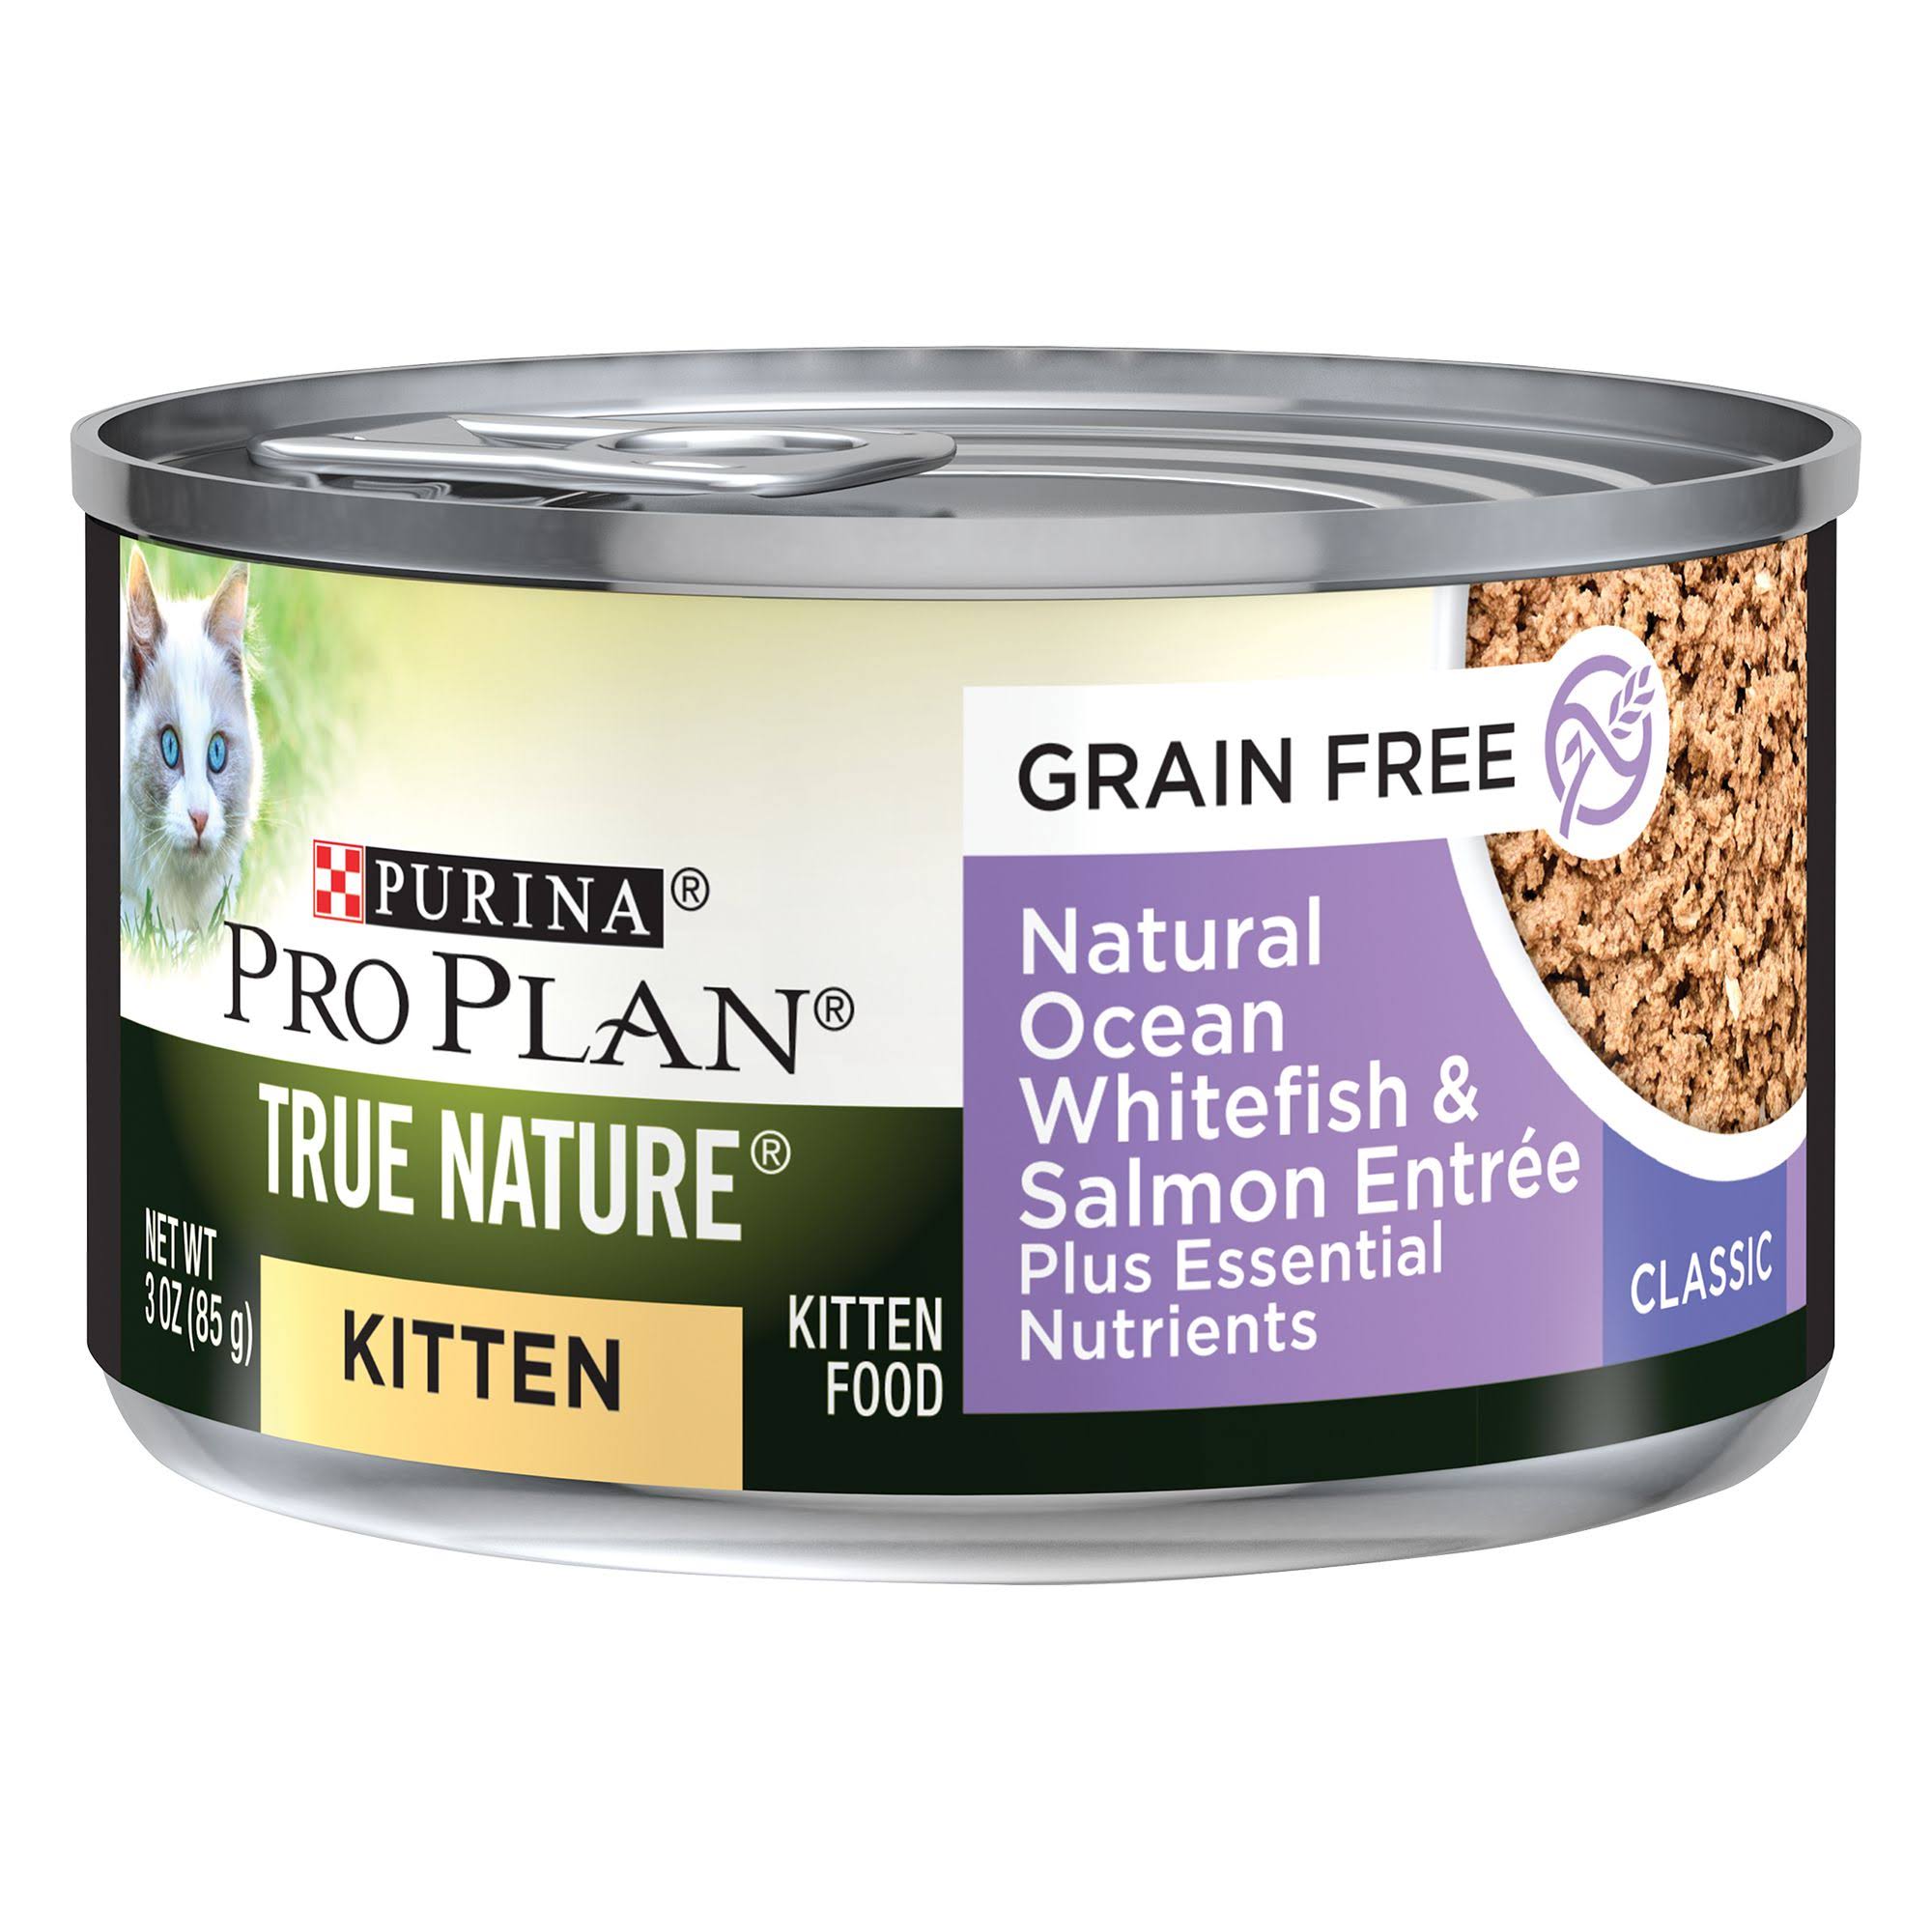 Purina Pro Plan Grain Free Ocean Whitefish & Salmon Formula Wet Kitten Food Pate, 3 oz.